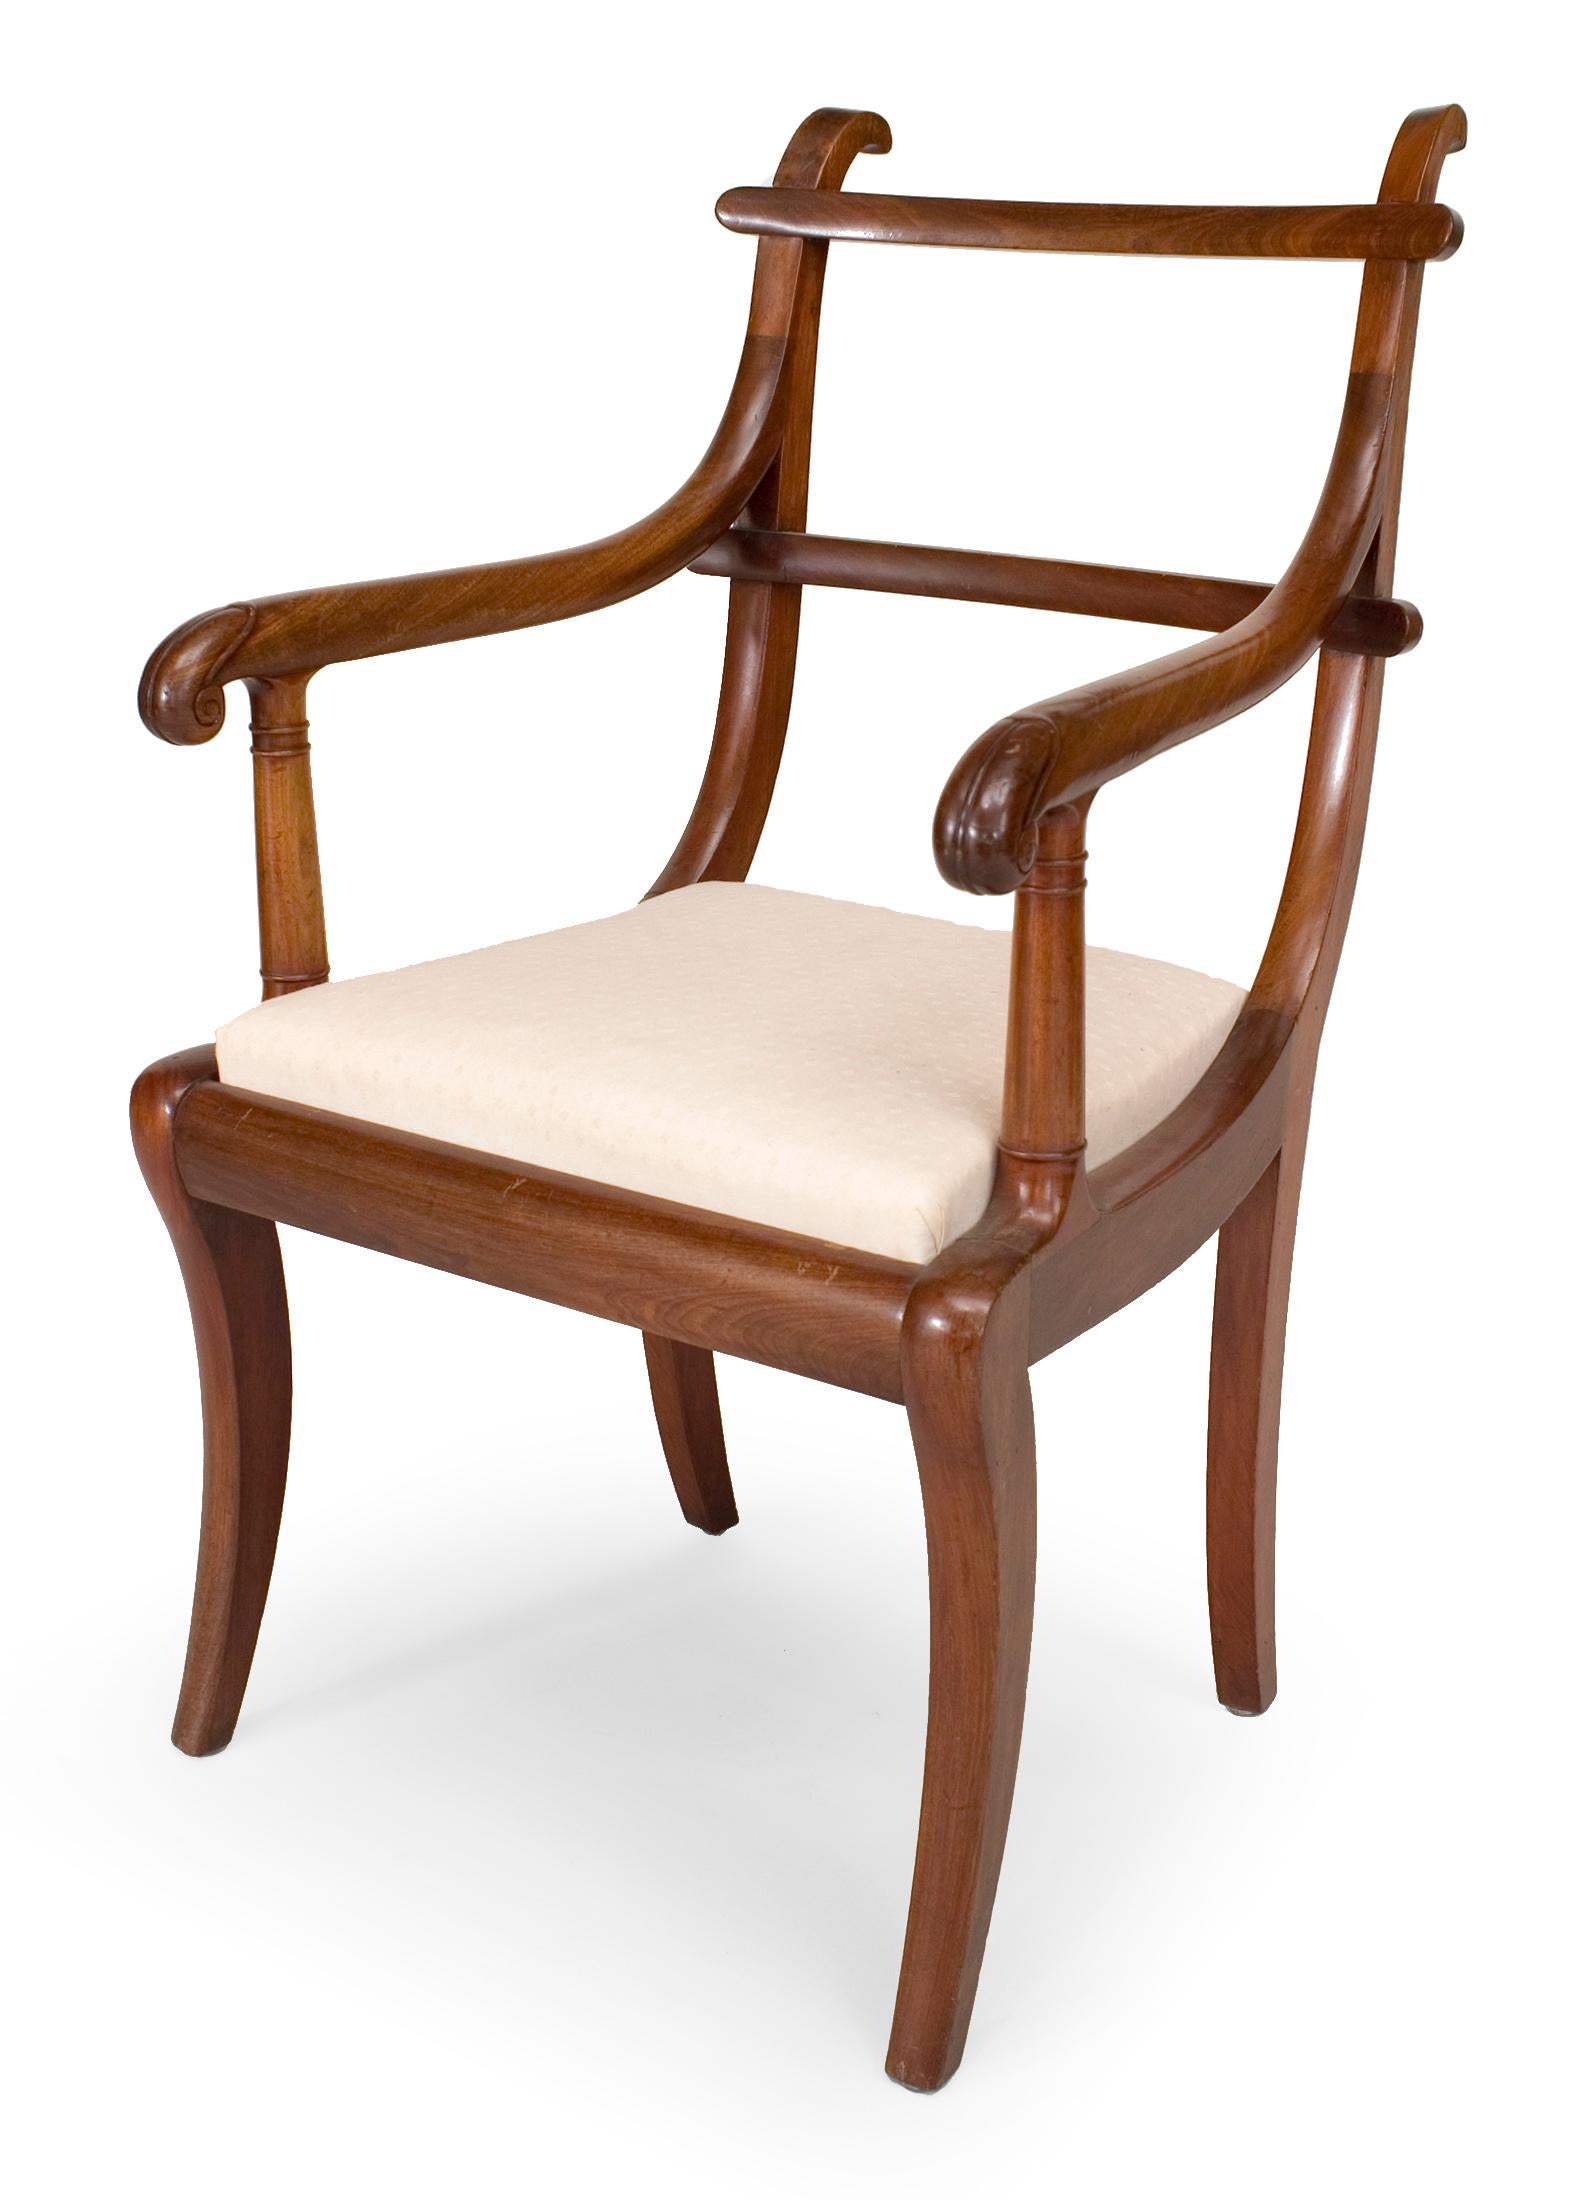 Paire de fauteuils de style Régence anglaise (19e siècle) en acajou avec dossier en échelle et sièges coulissants.
 